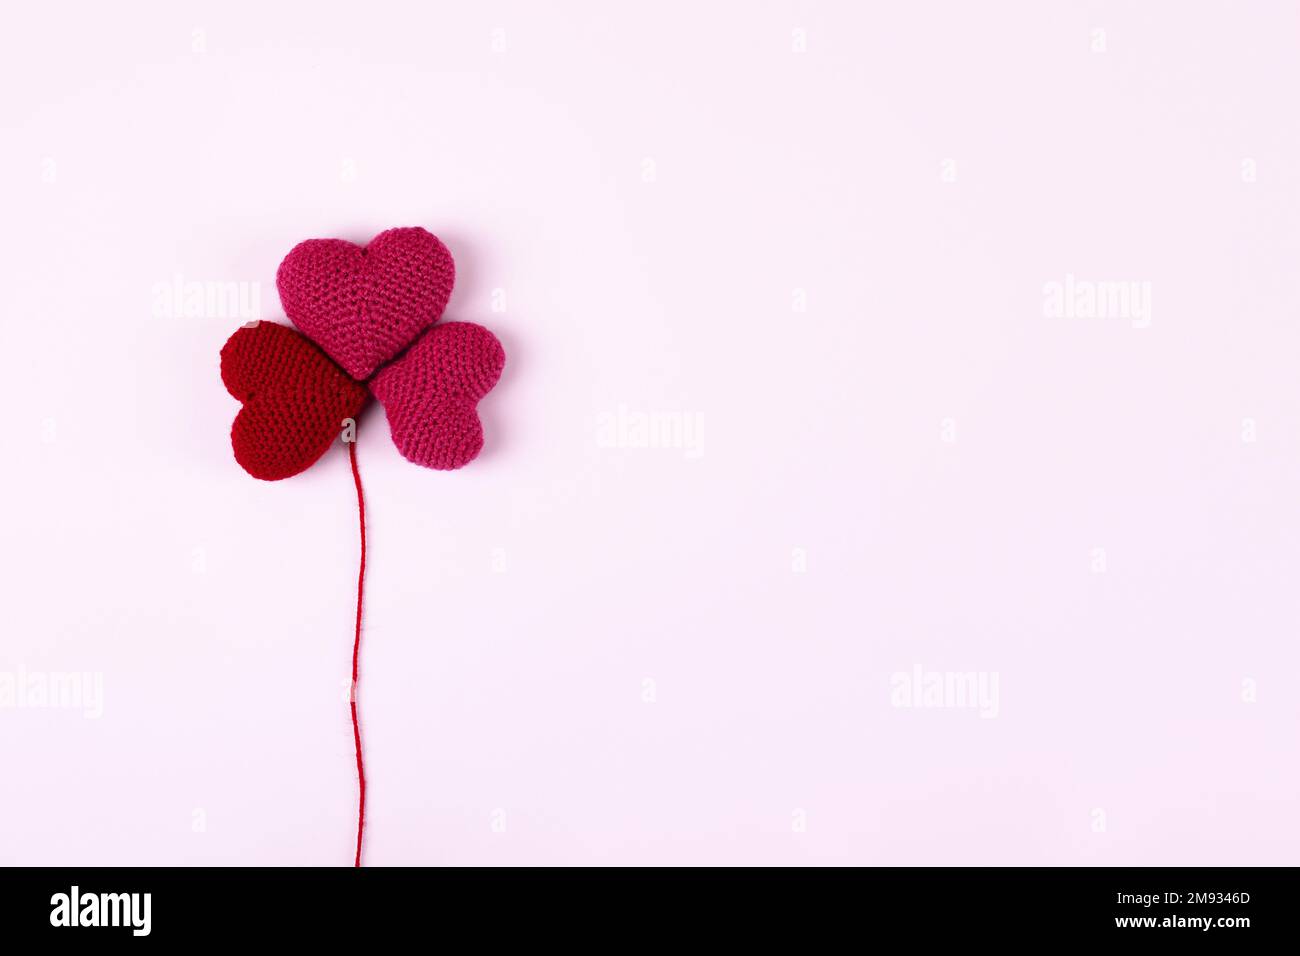 Rote gehäckselte Herzen sind in Form eines Blumenklees auf lila Hintergrund angelegt. Happy Valentine's Day, Mother's Day und Birthday Grußwagen Stockfoto